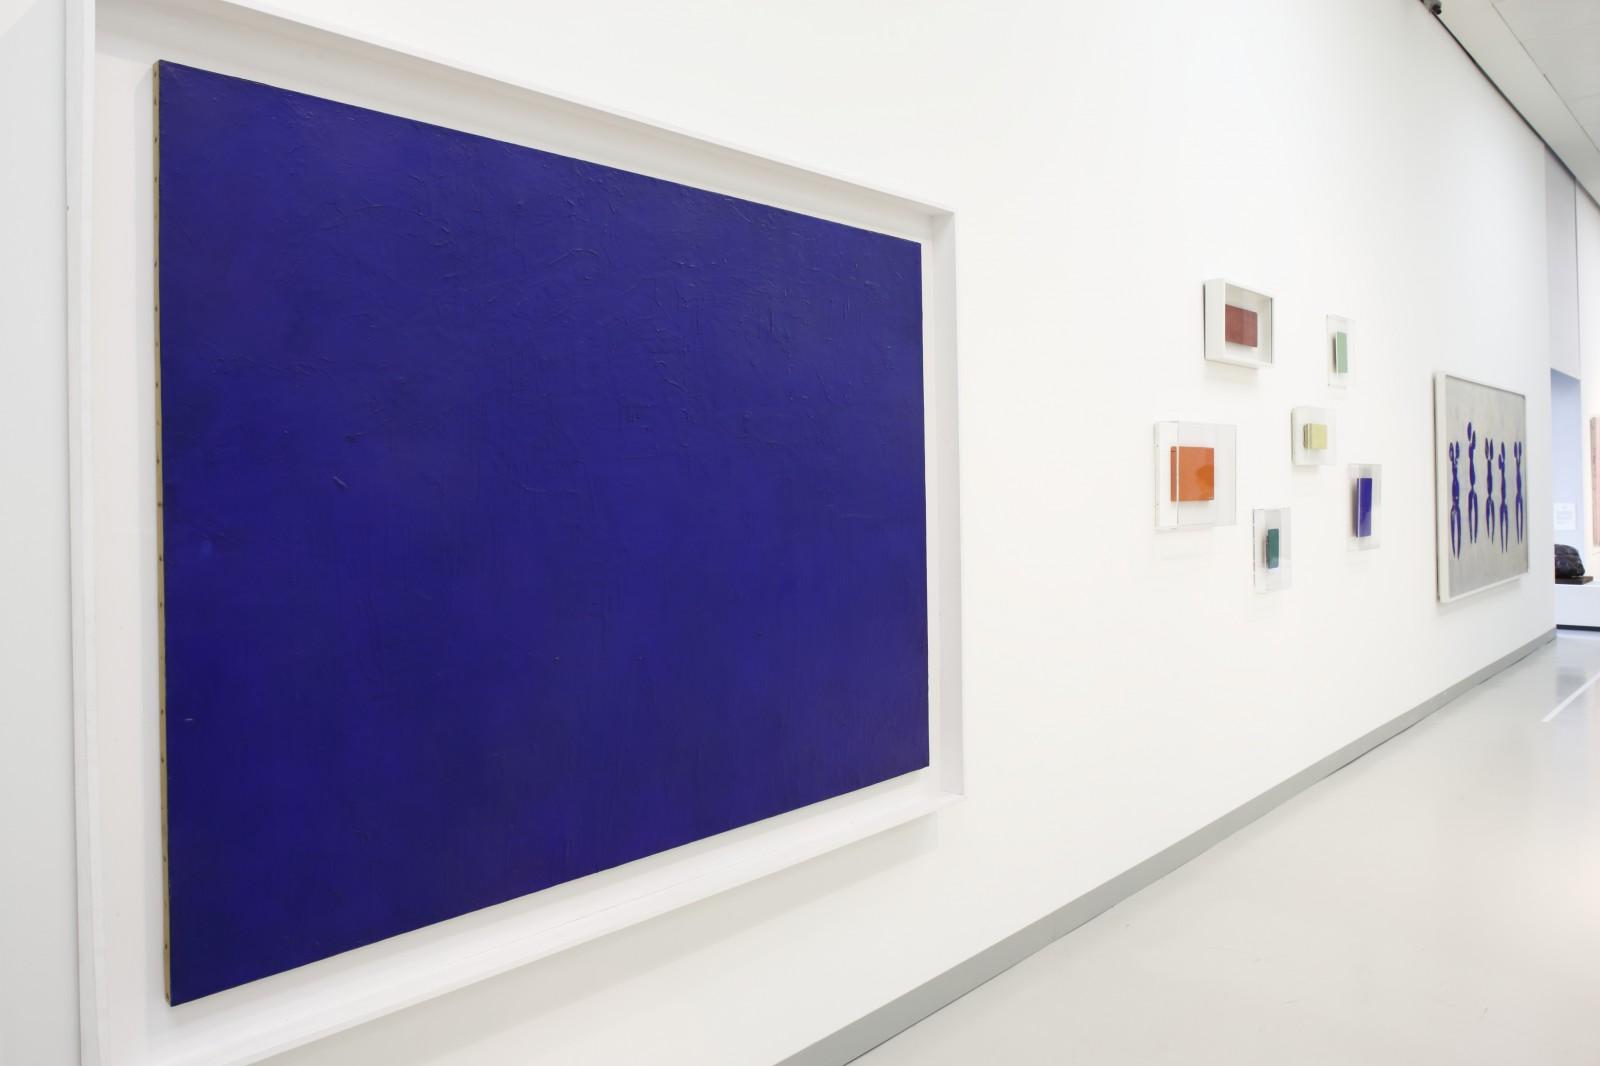 View of the exhibition "Yves Klein Lucio Fontana Milano Parigi 1957-1962", Museo del Novecento, 2014